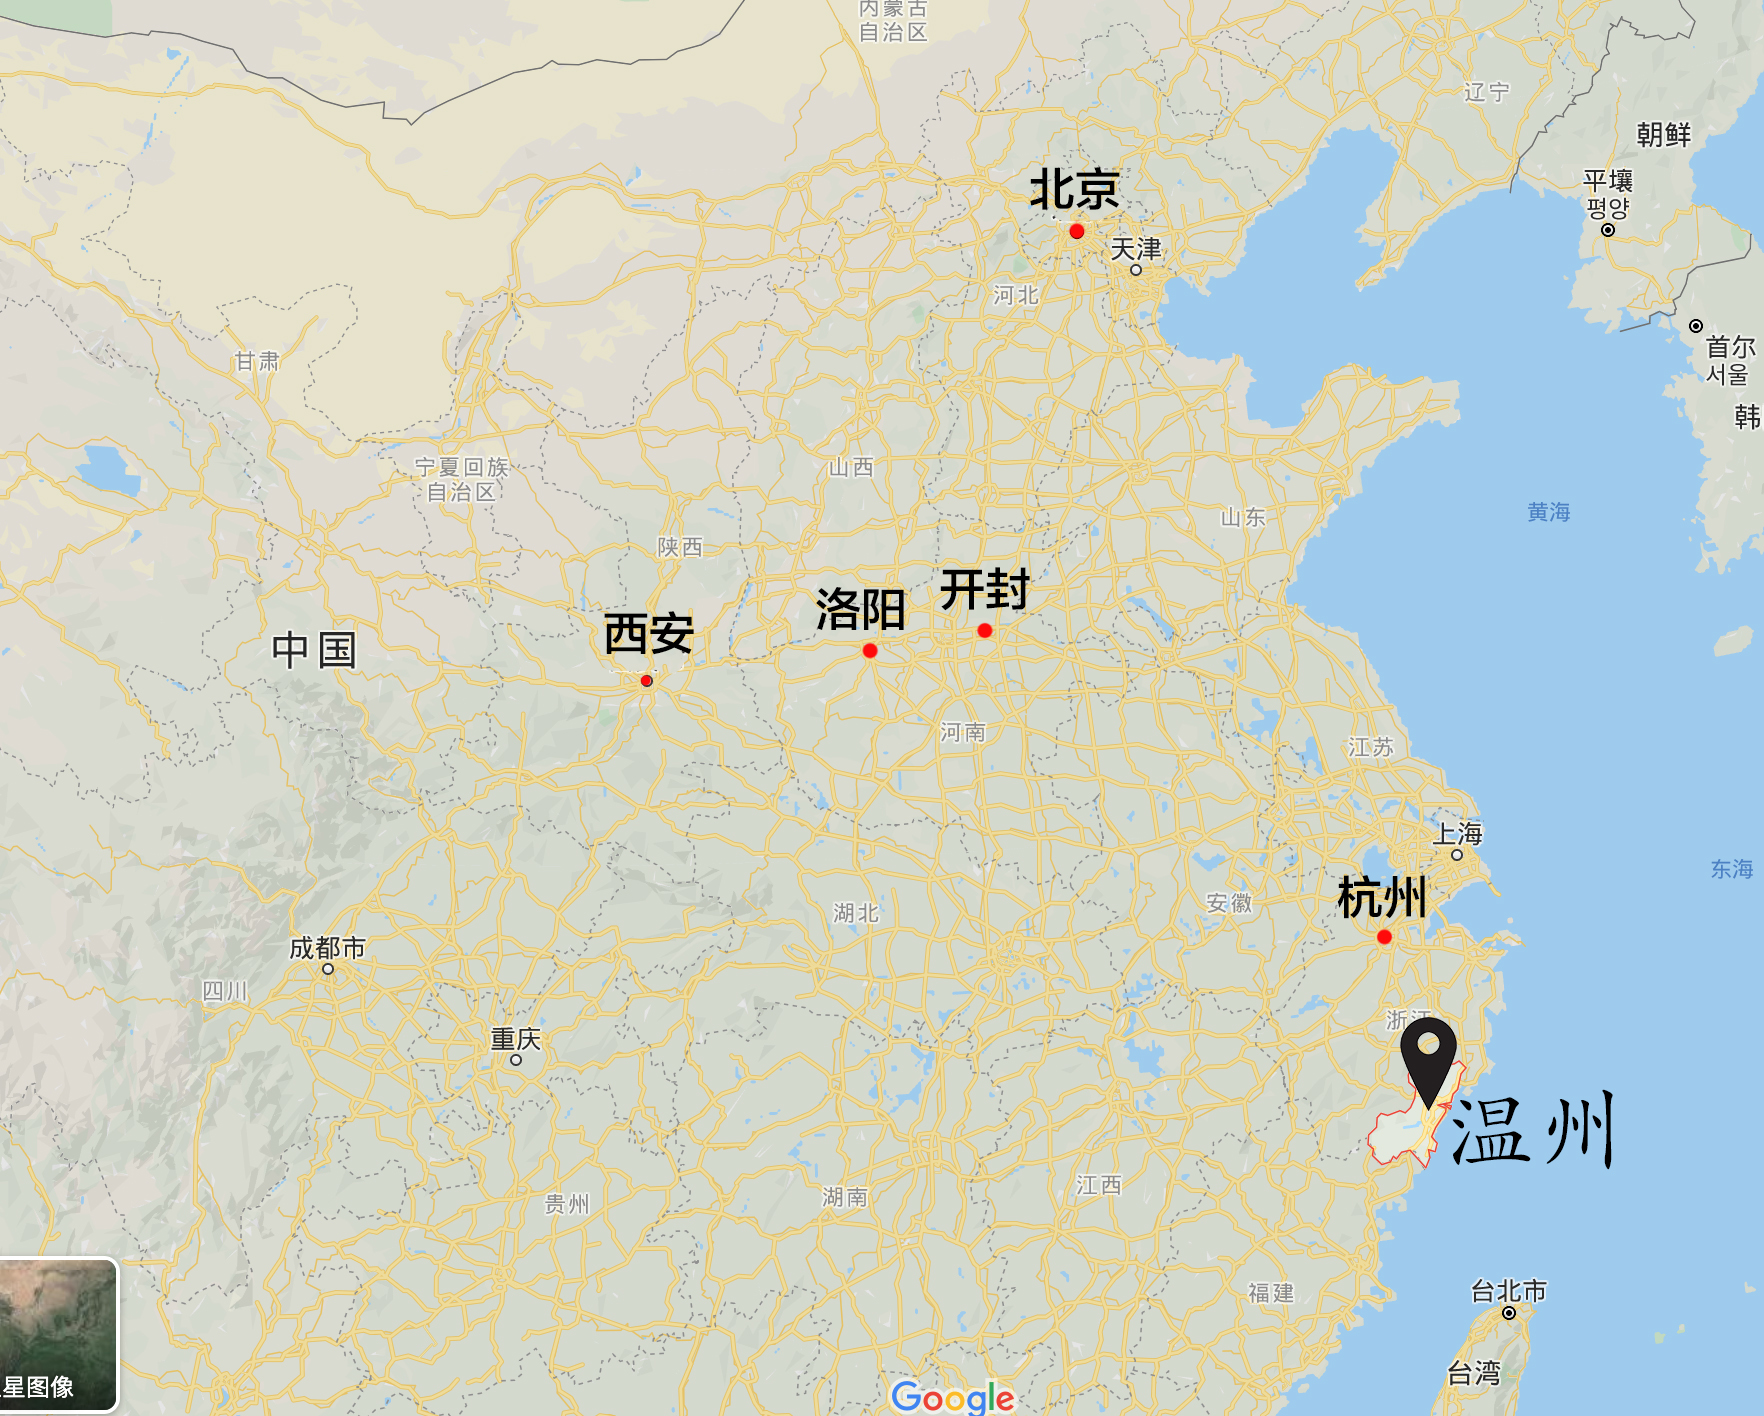 温州的位置 地图来源:google earth 制图:搜狐城市